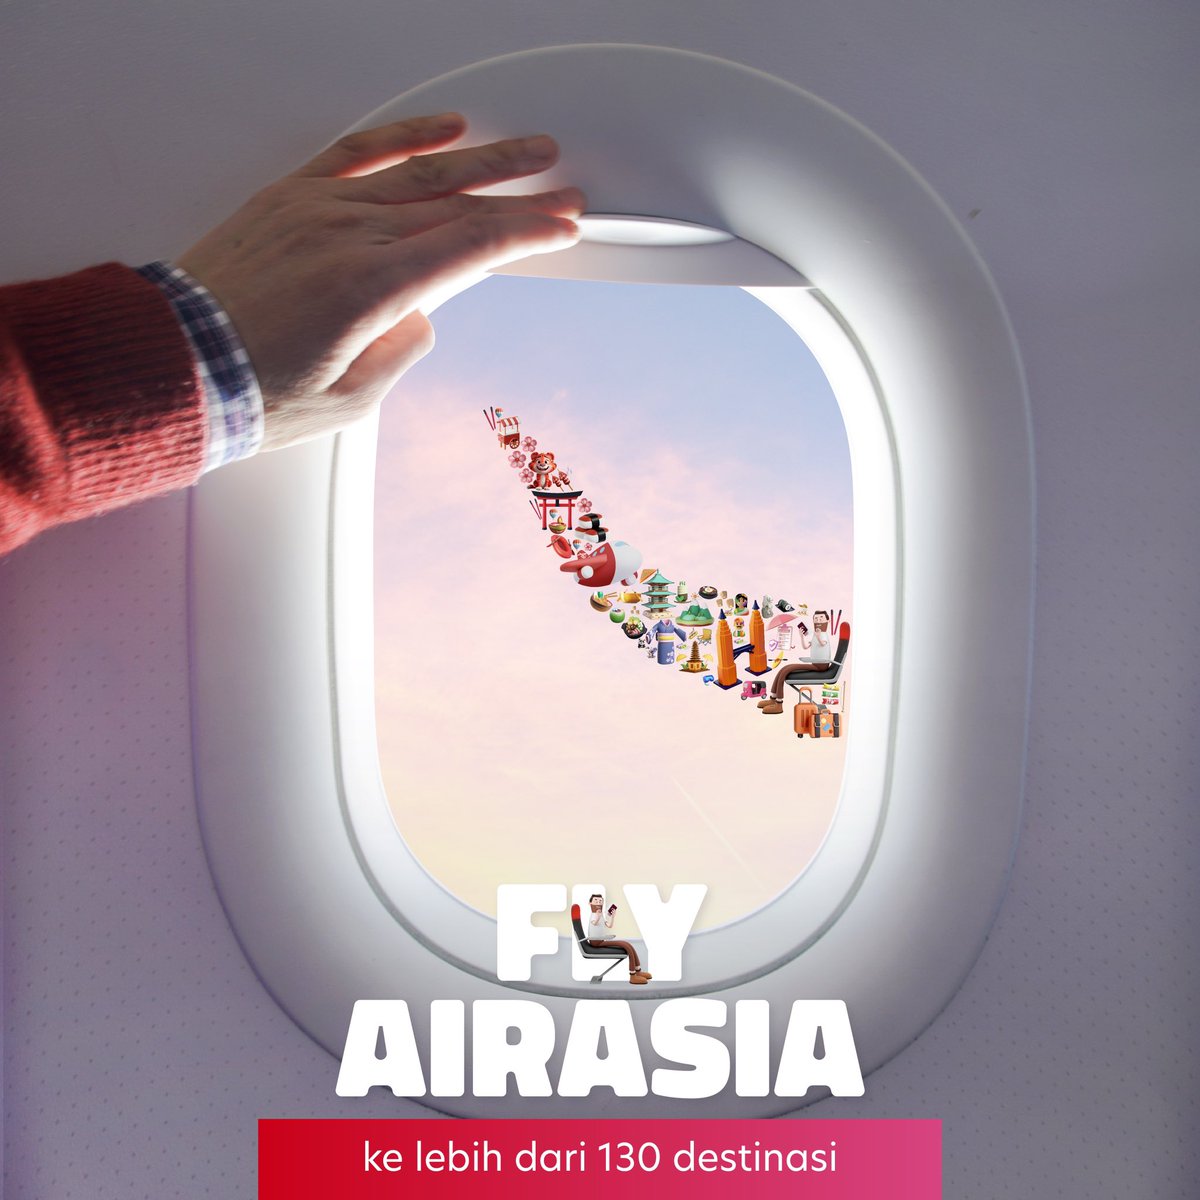 FlyAirAsia ke Korea, Jepang, Vietnam, Australia, China dan lebih dari 130 destinasi lainnya!✈️ Mulai Rp1jutaan aja, pesan tiketmu sekarang! 🎉